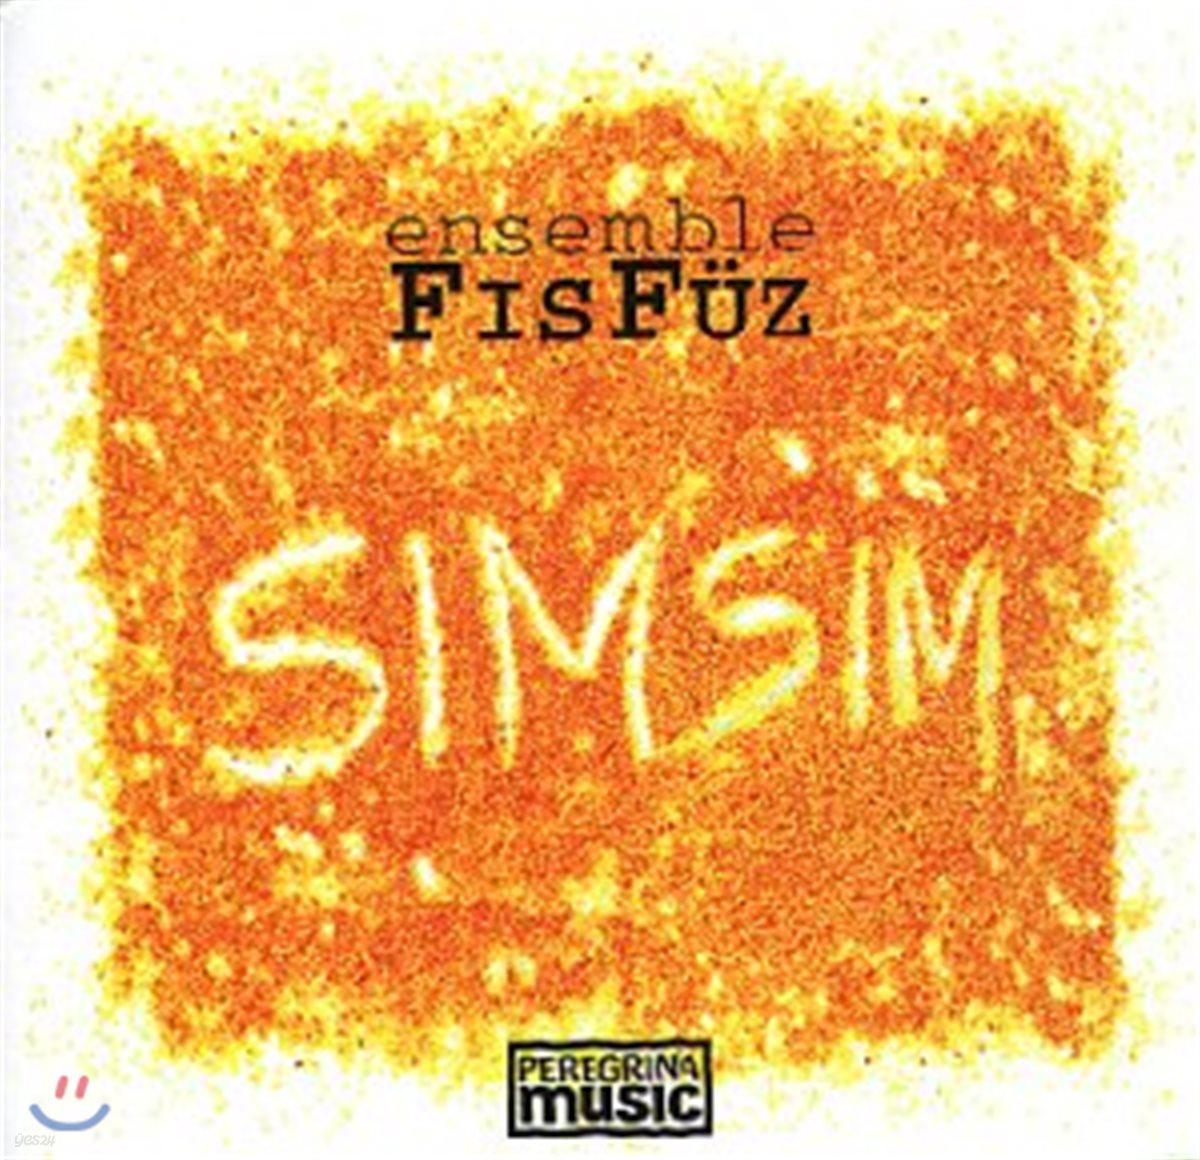 Ensemble Fisfuz - Simsim